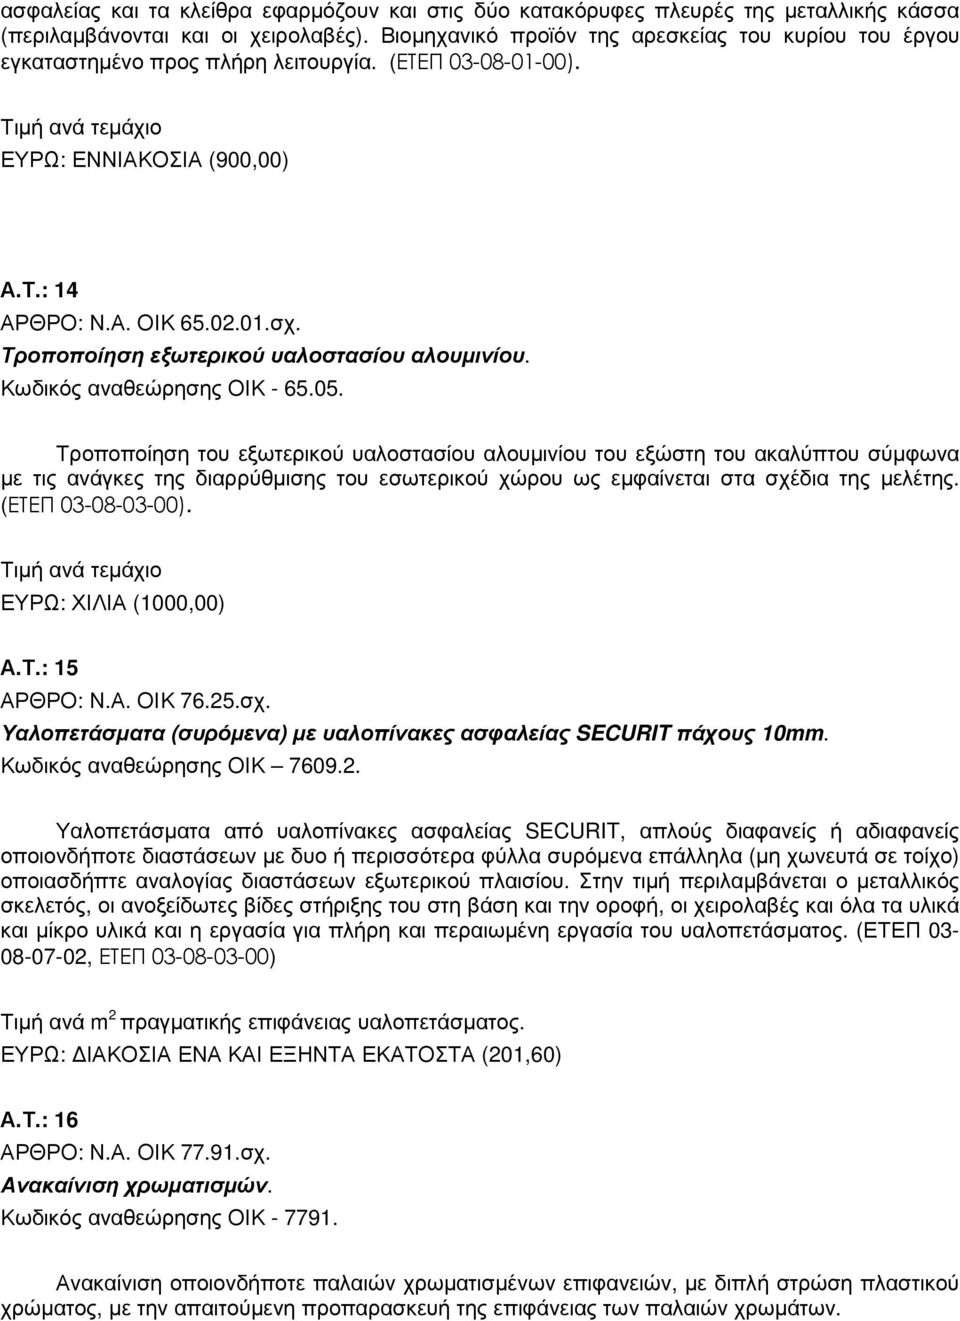 Τροποποίηση εξωτερικού υαλοστασίου αλουµινίου. Κωδικός αναθεώρησης ΟΙΚ - 65.05.